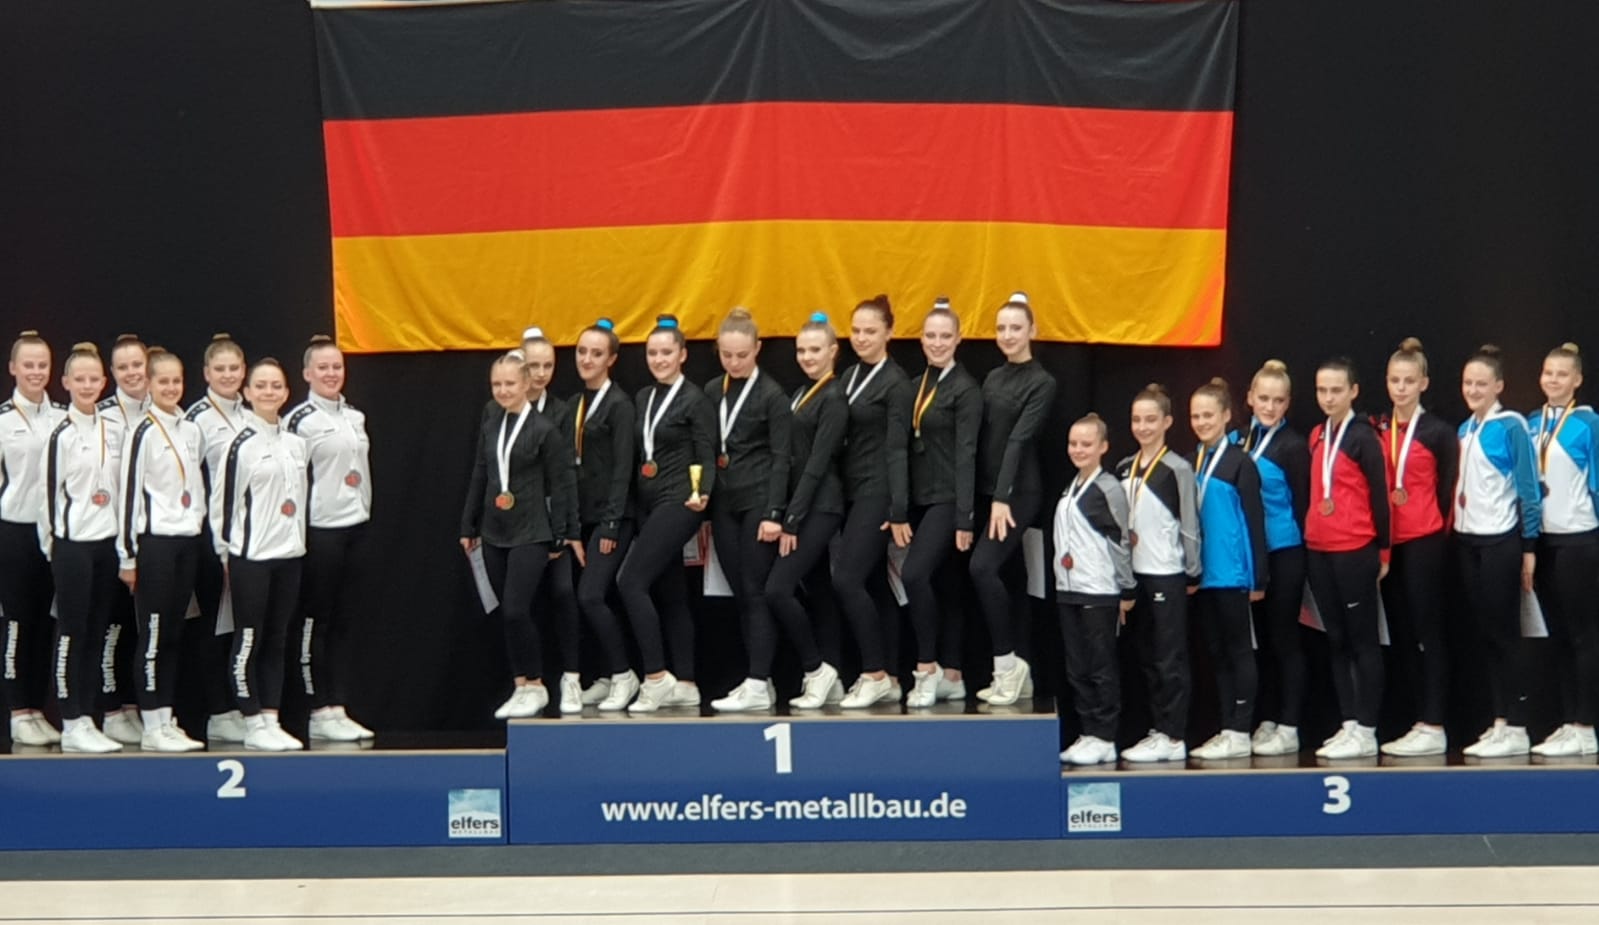 Dance Team "Schwan" DM 2022 Goldmedaille